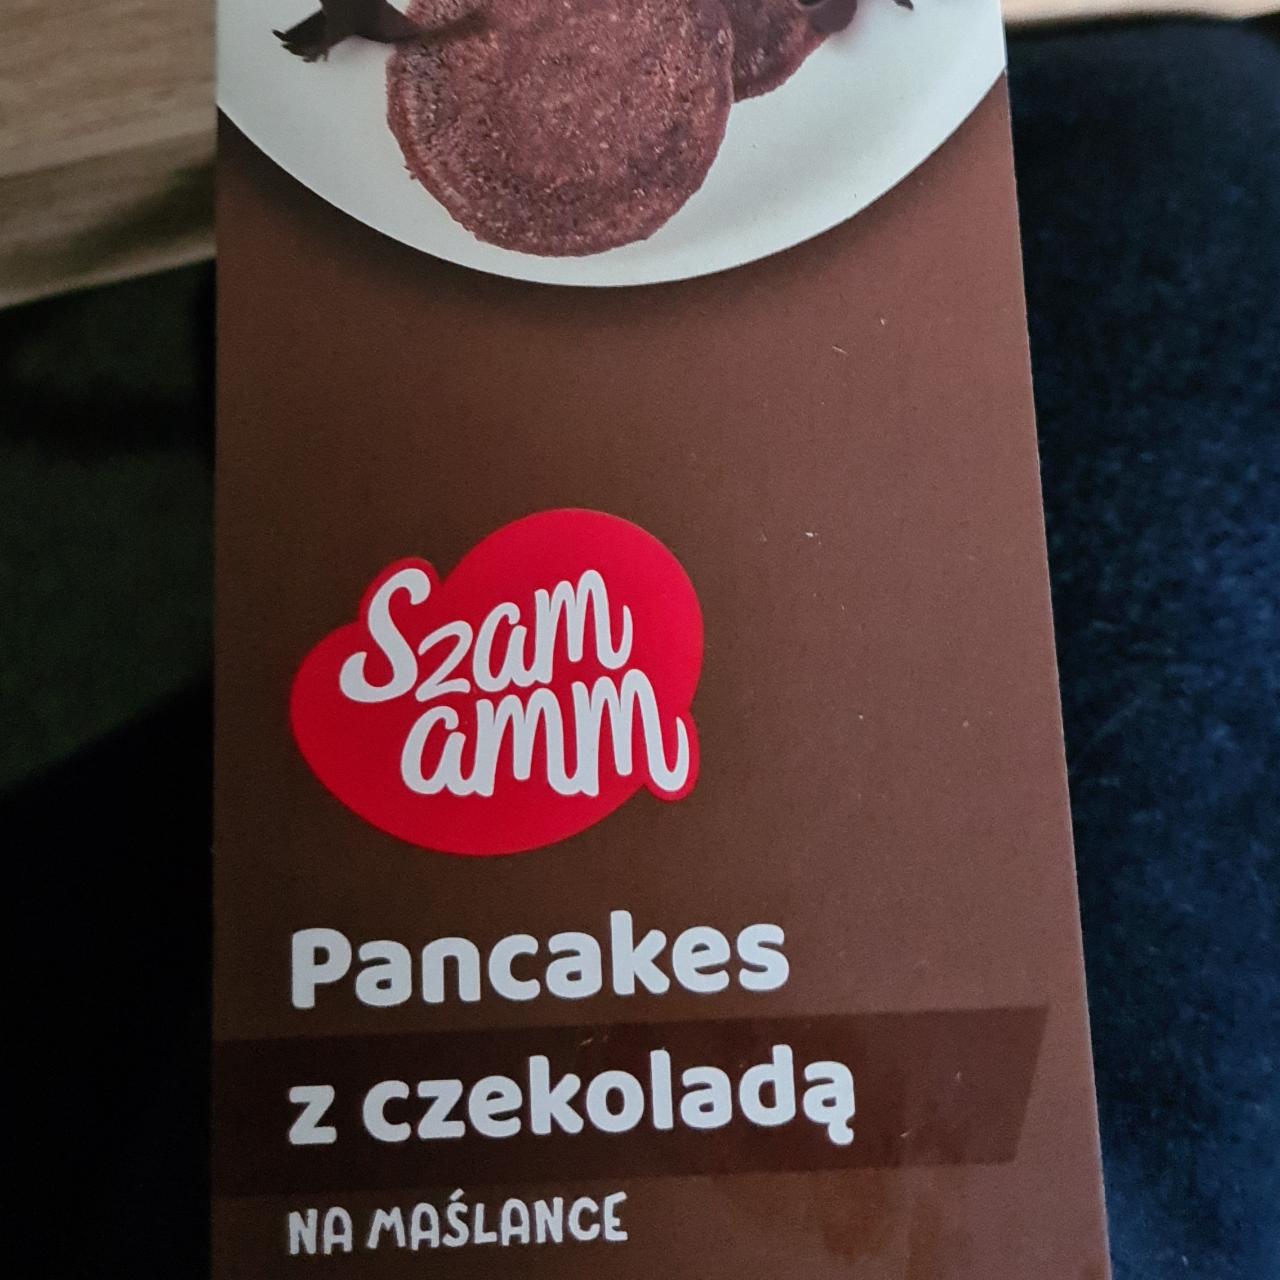 Fotografie - Pancakes z czekolada Szam amm